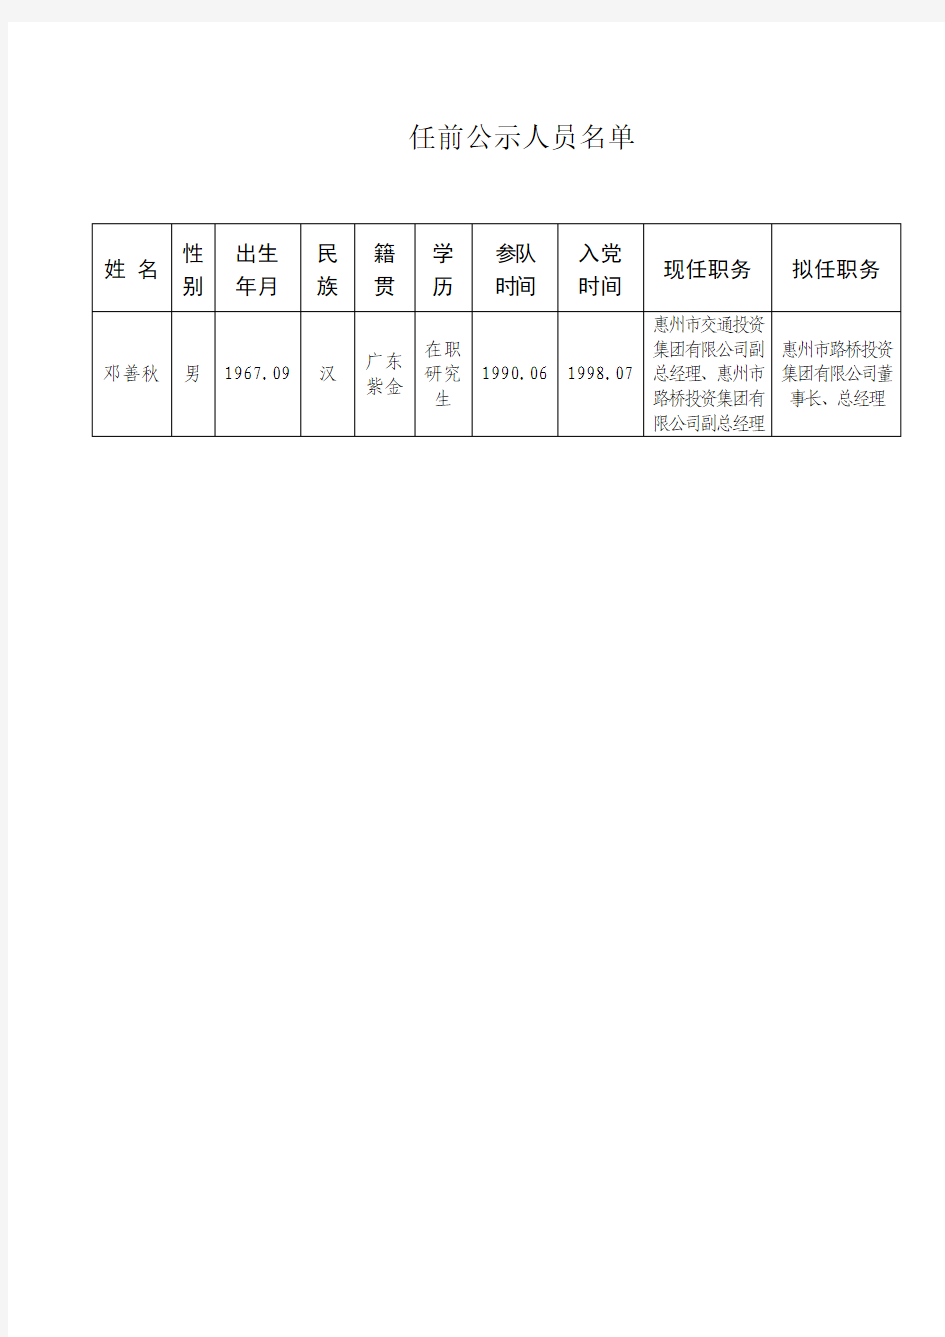 任前公示人员名单 - 惠州市人民政府国有资产监督管理委员会